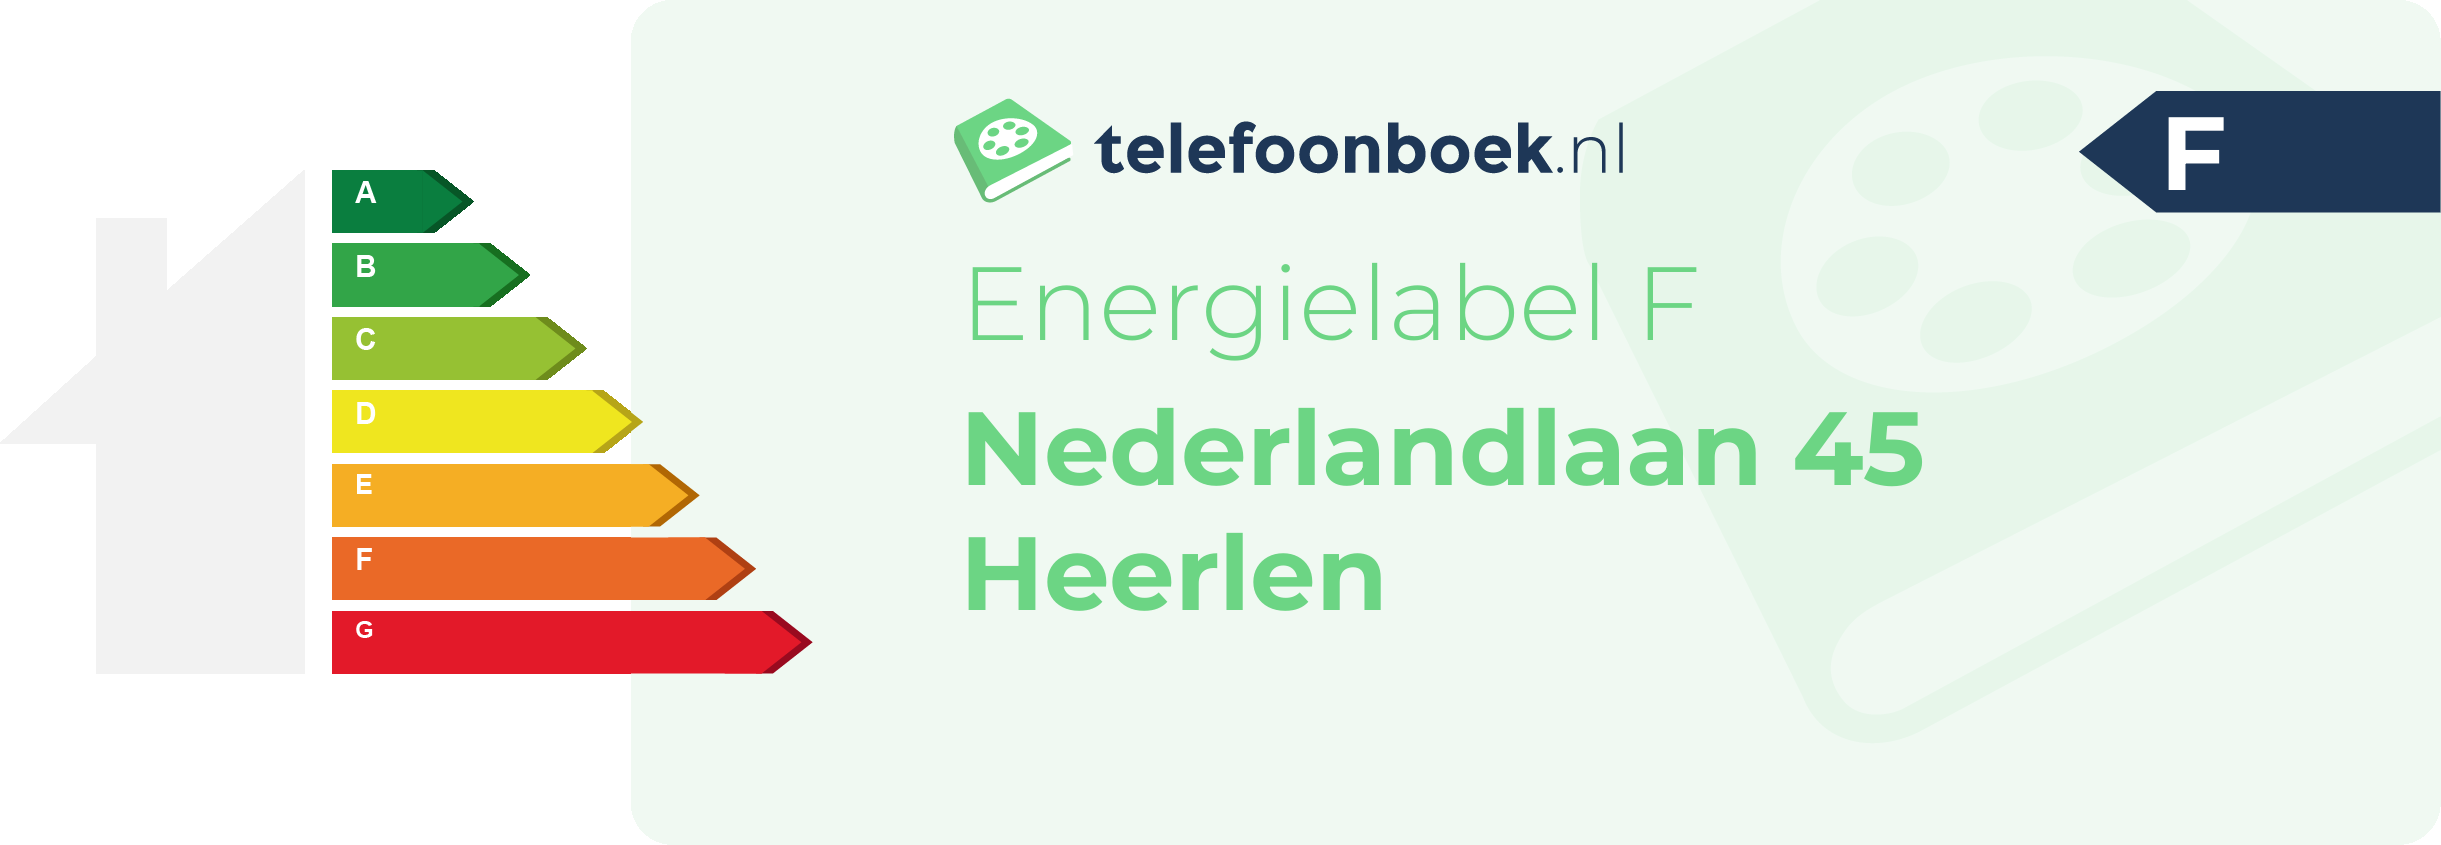 Energielabel Nederlandlaan 45 Heerlen